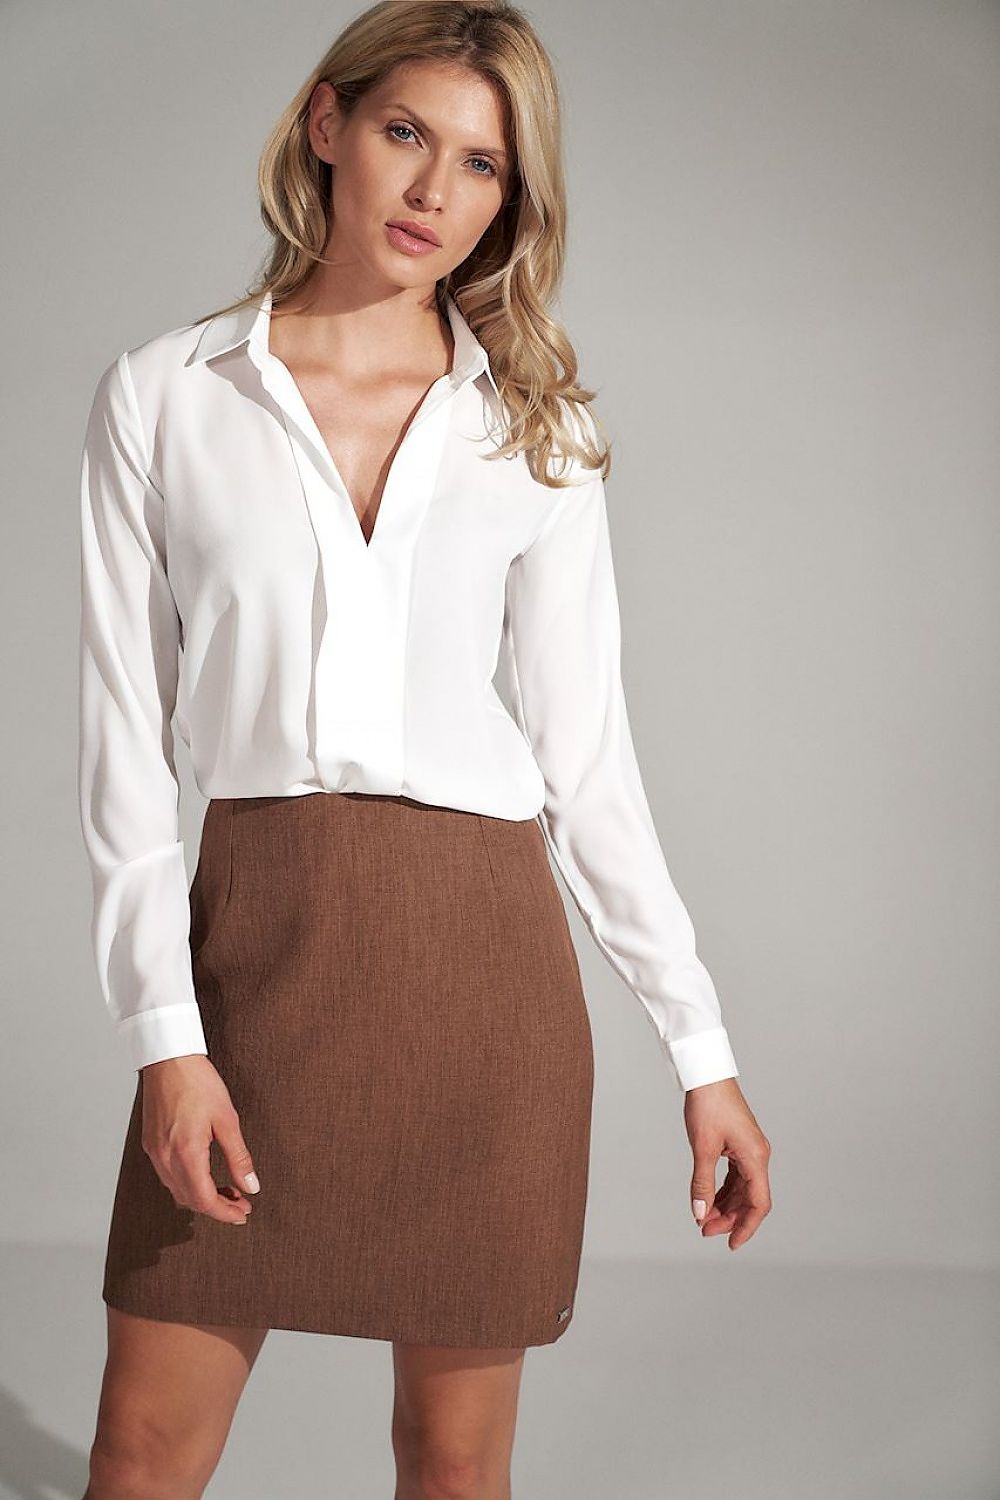 Jupe mini-jupe trapèze marron élégante, idéale pour une tenue de bureau ou une sortie chic, coupe tendance.